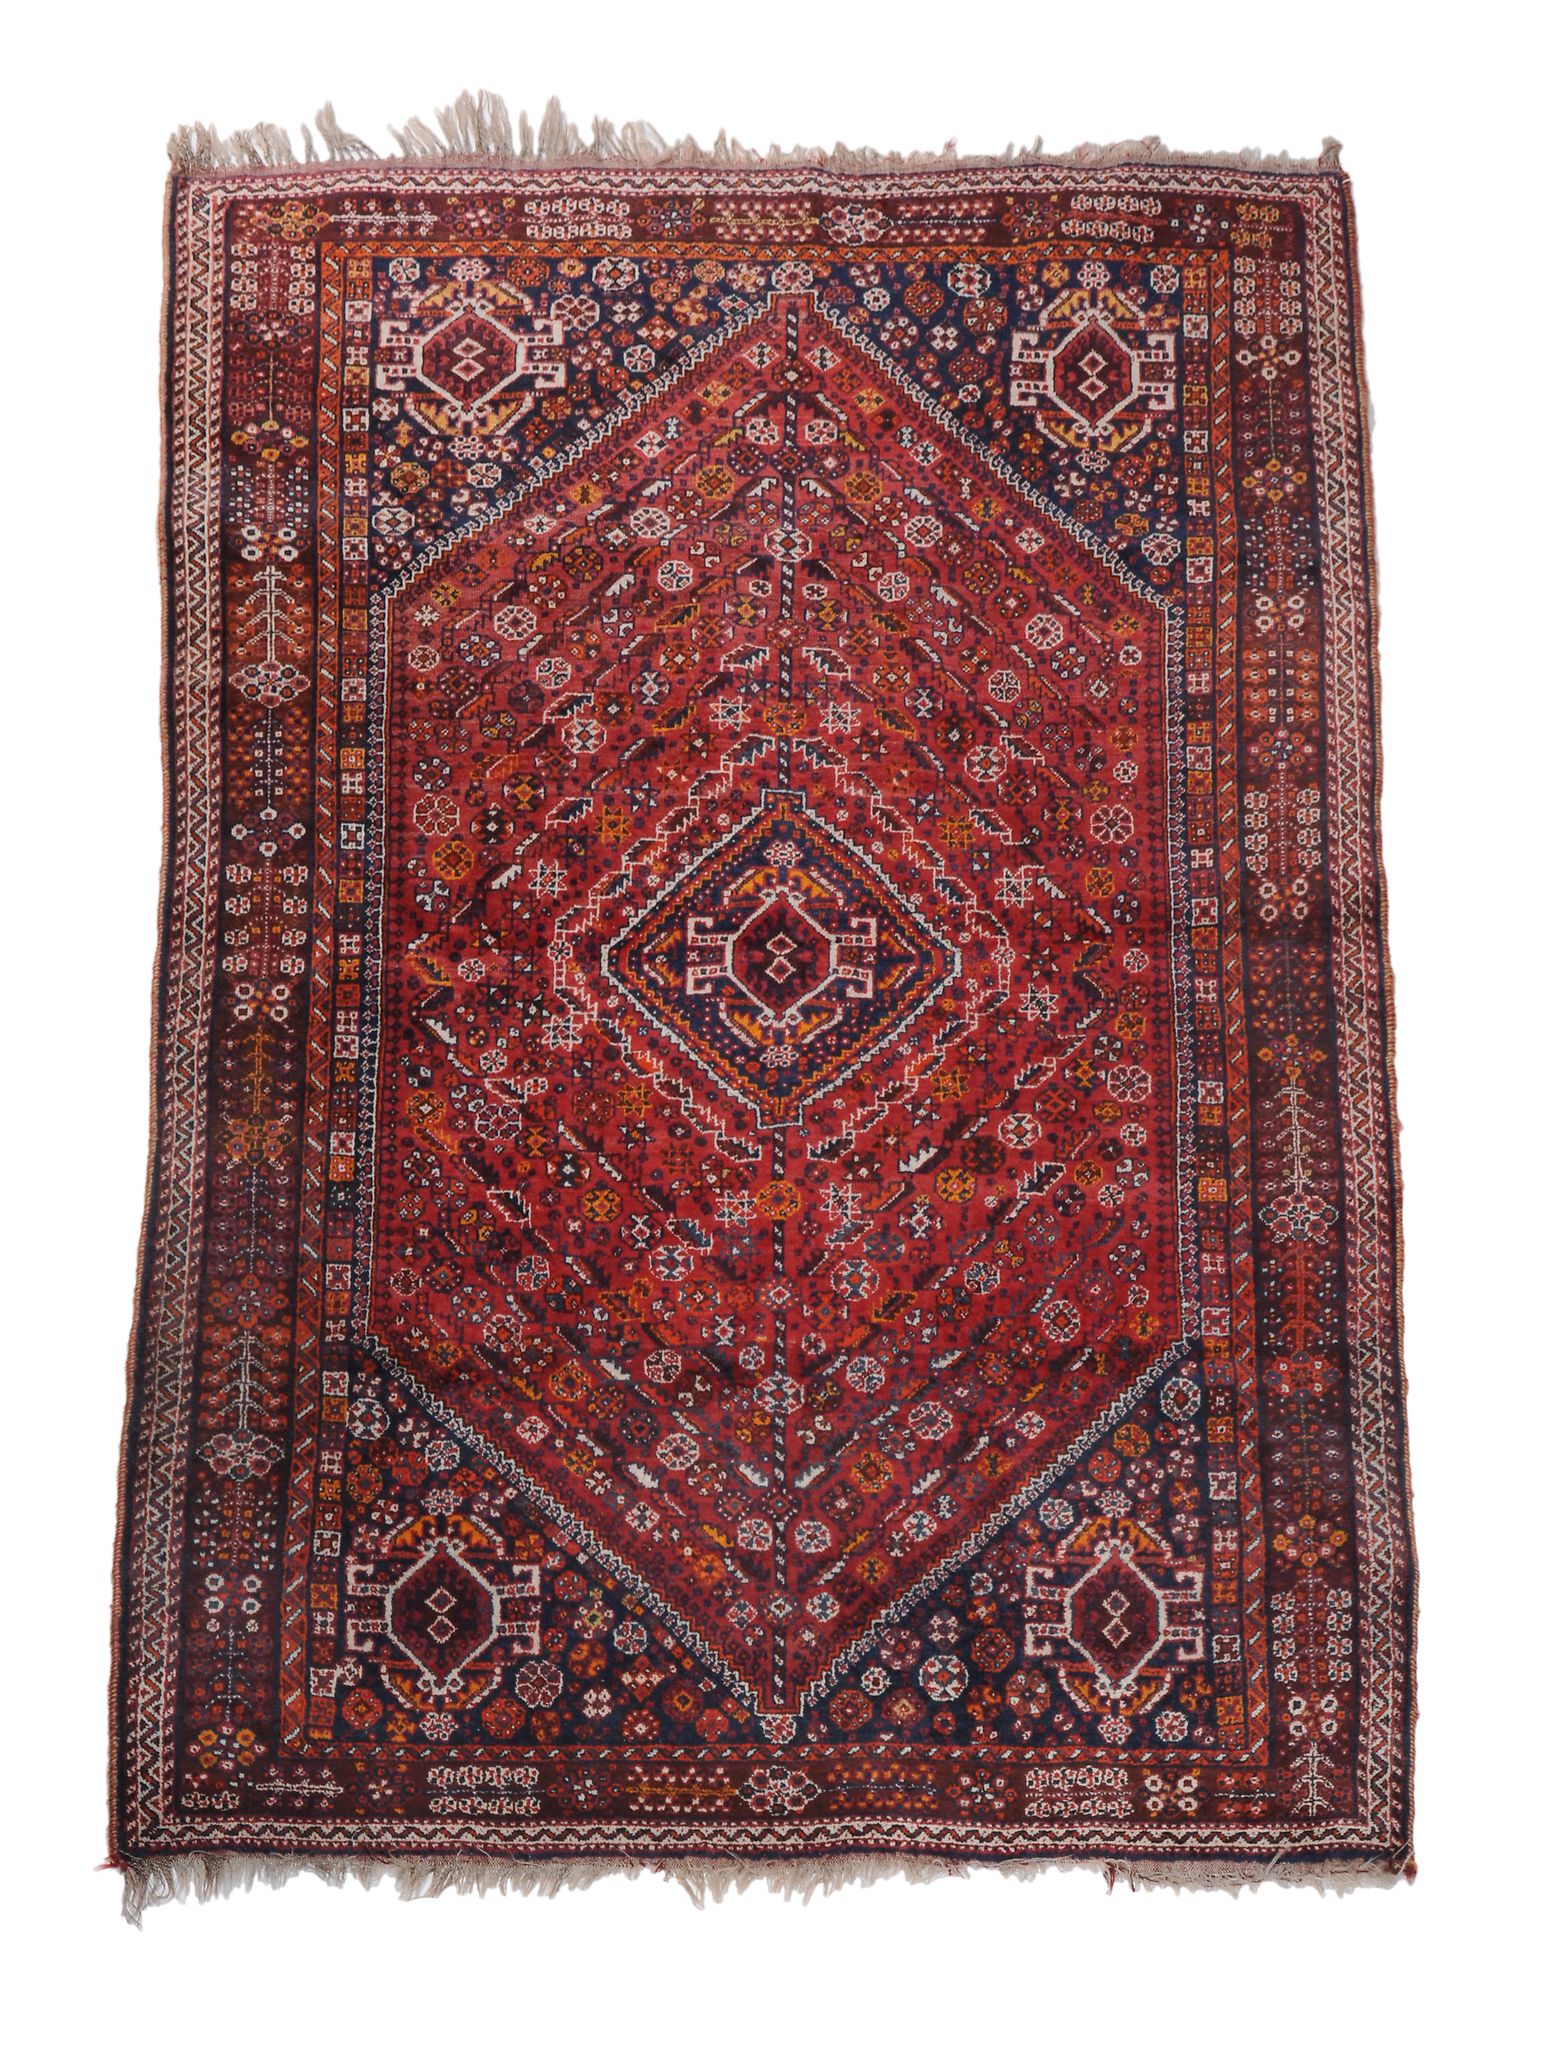 A Quashquai carpet, approximately 262 x 164cm, together with a Quashquai rug  A Quashquai carpet, - Image 2 of 3